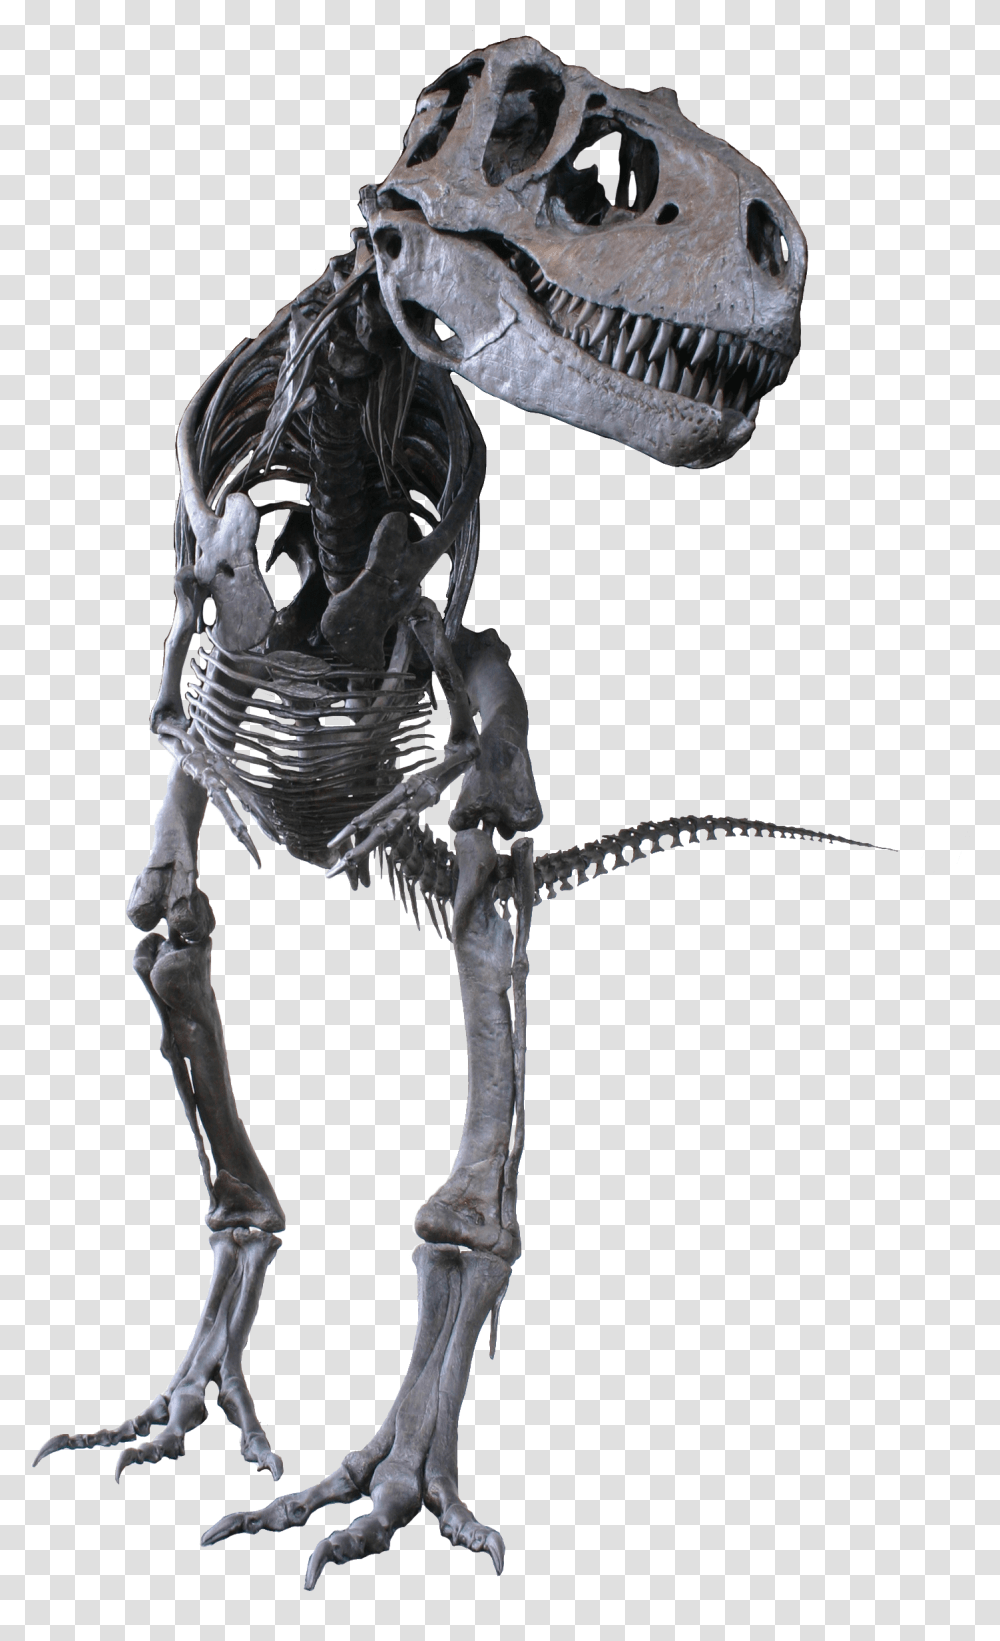 Albertosaurus Clean Albertosaurus Sarcophagus, Skeleton, Animal, Dinosaur, Reptile Transparent Png